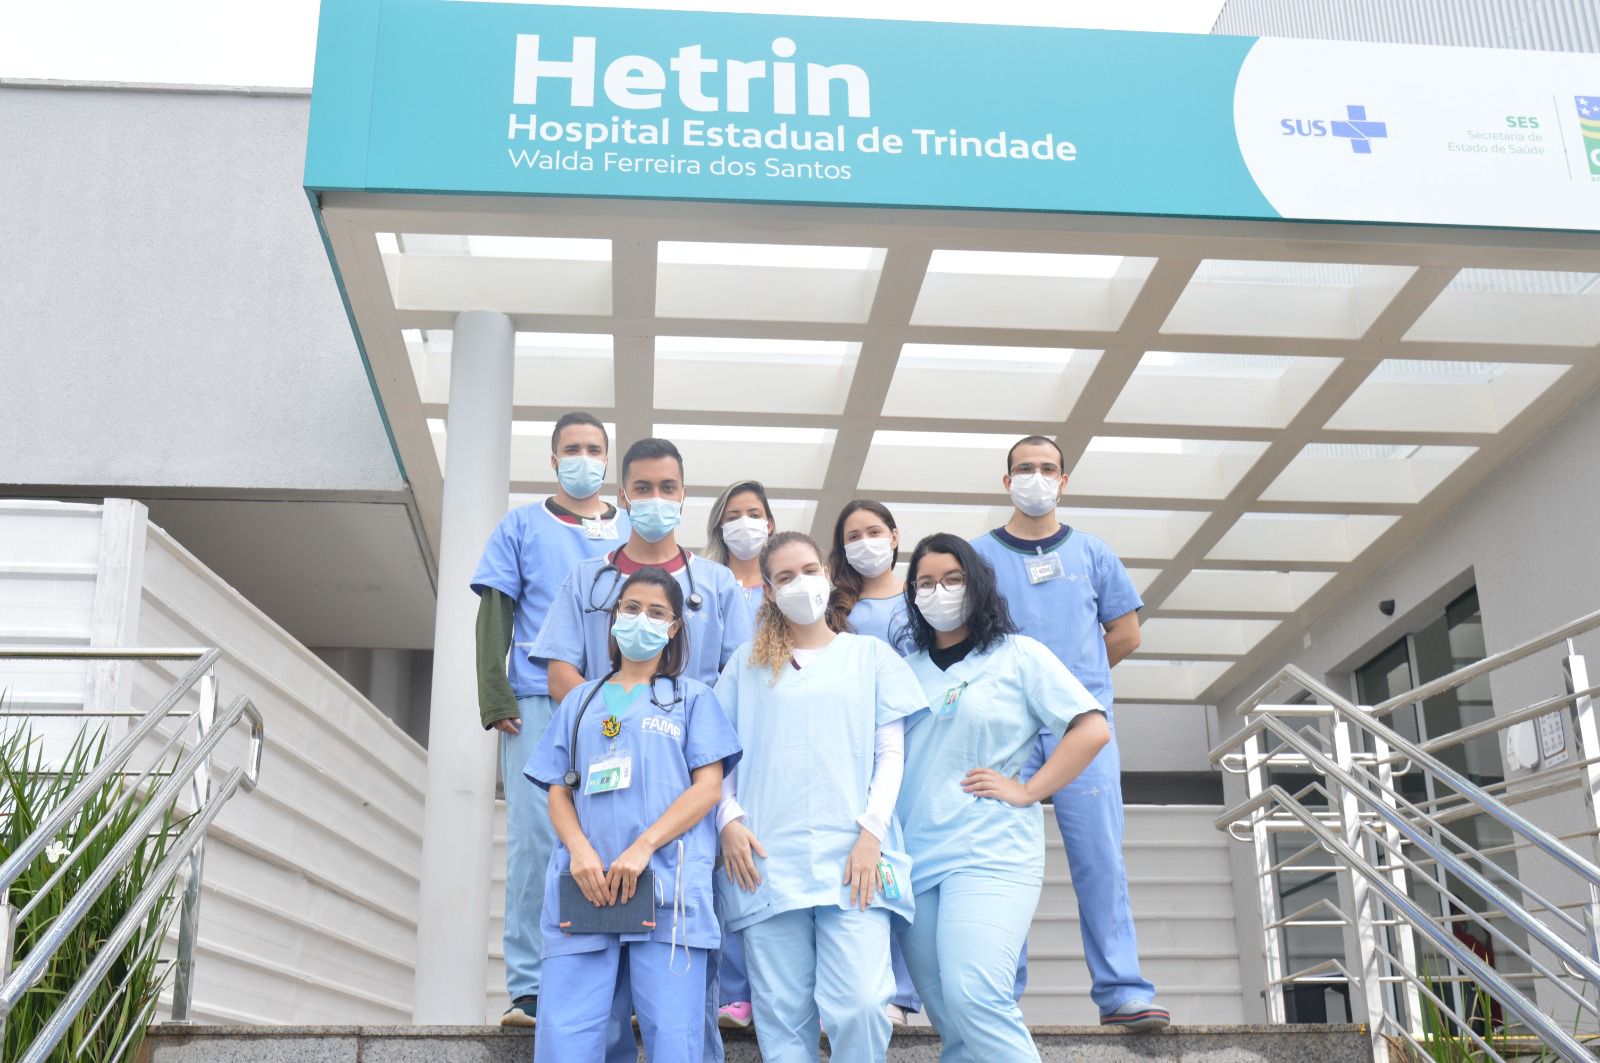 Alunos de medicina, entre meninas e meninos estão à frente do hospital Hetrin nas escadas com roupas no tom azul claro, todos participam do Programa de Estágio Hetrin